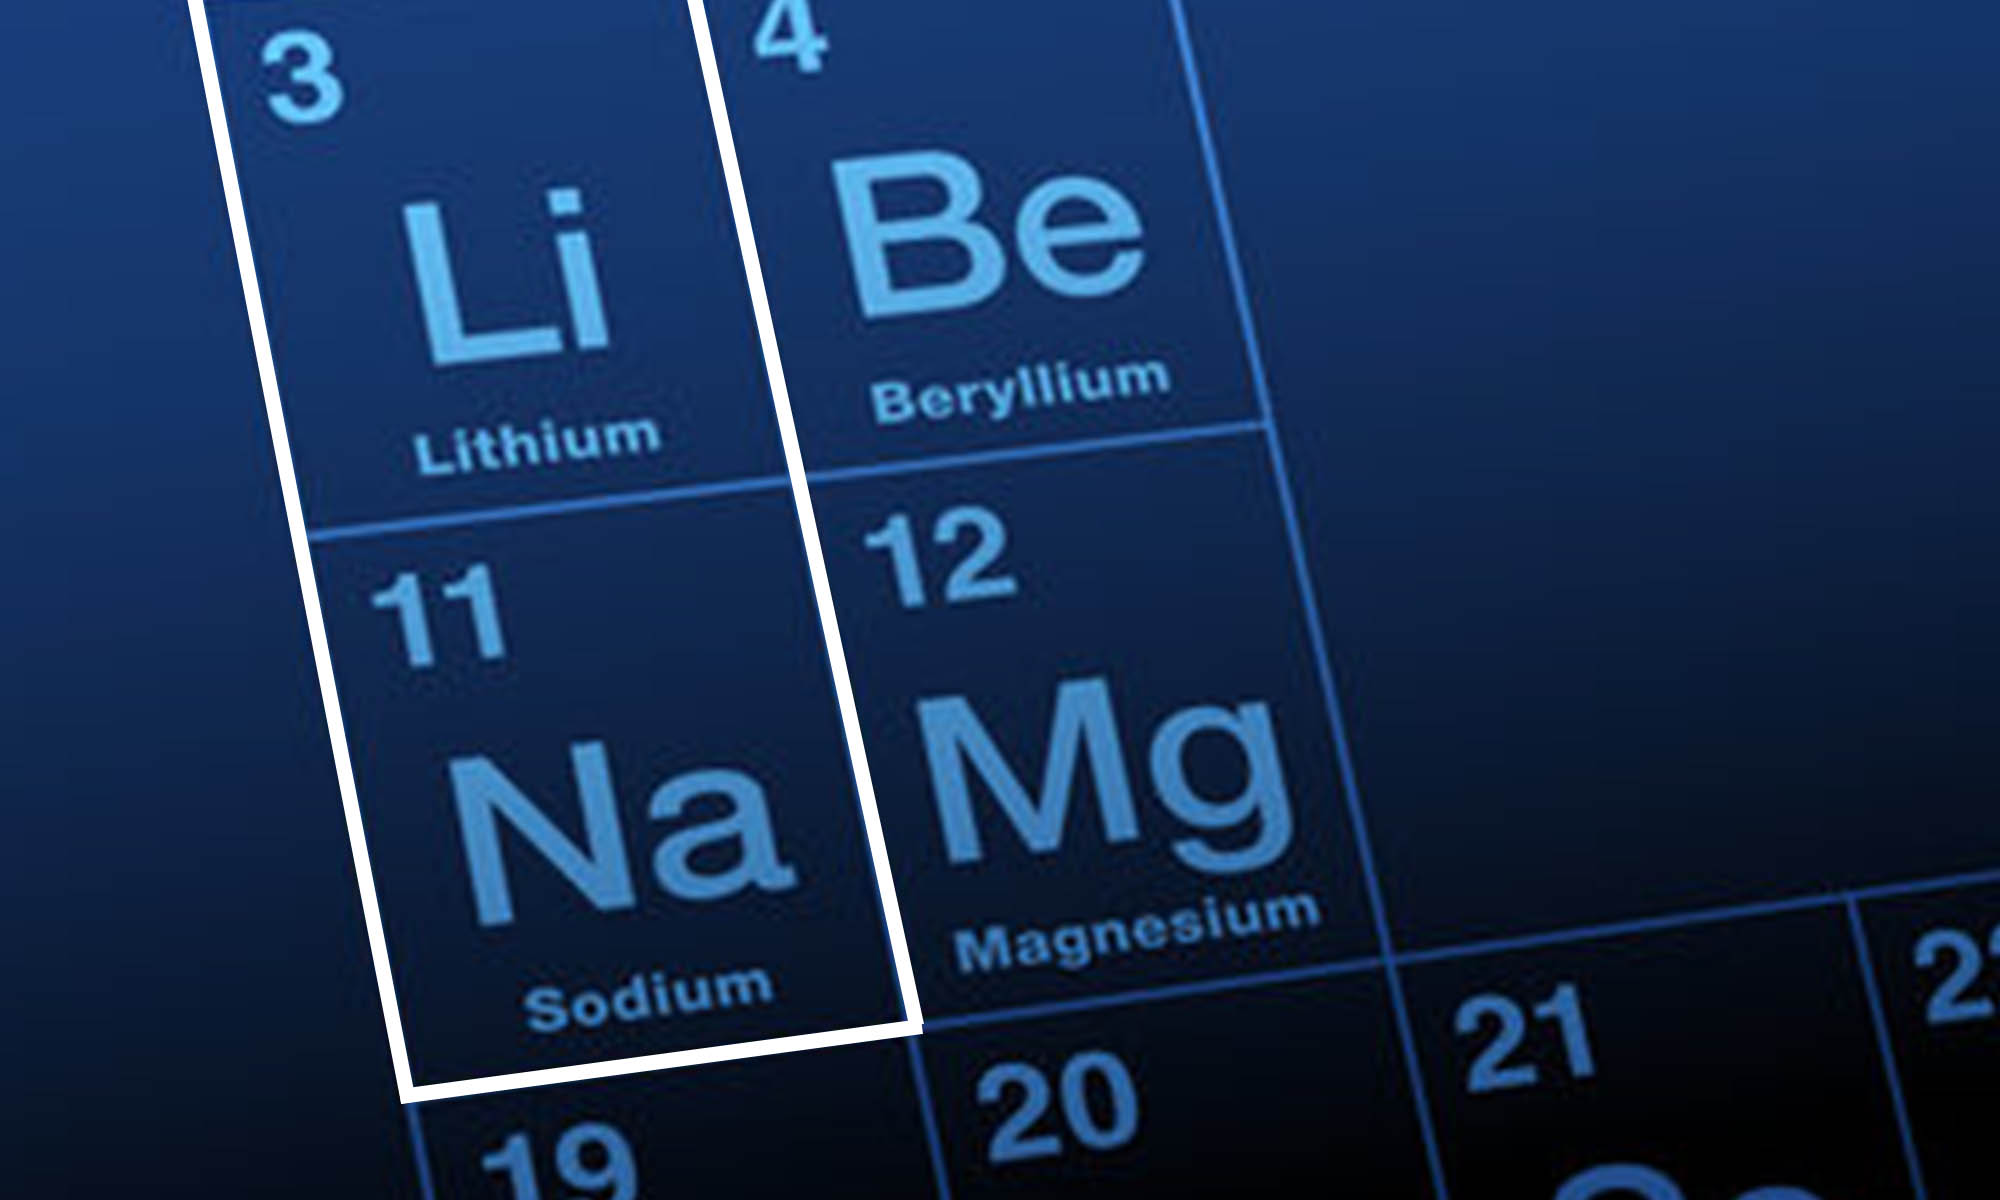 La cercanía del sodio y el litio en la tabla periódica significa que comparten propiedades que las hacen aptos para fabricar con ellos celdas de baterías.